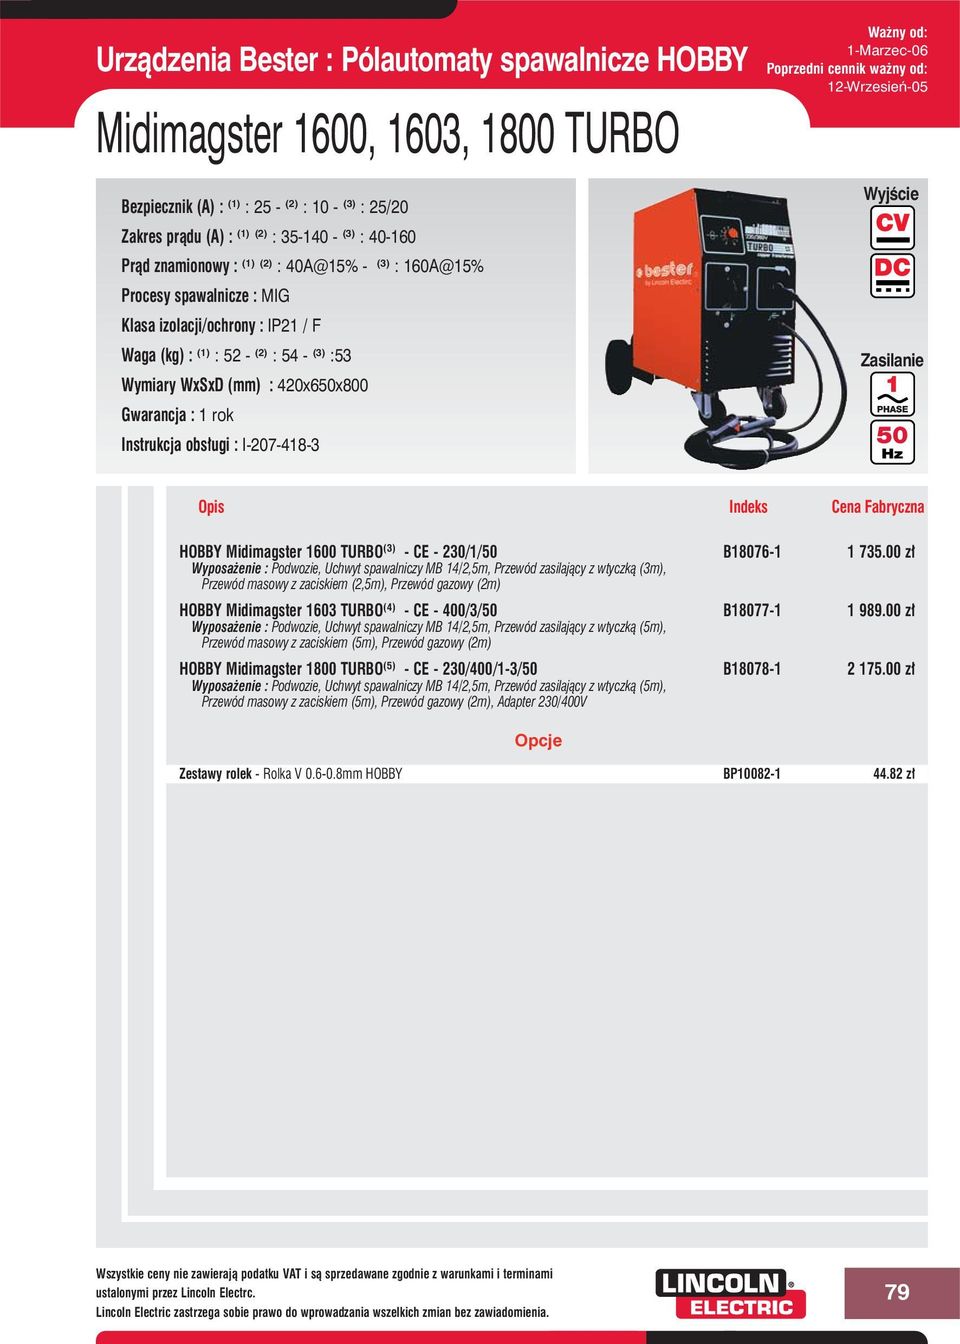 Midimagster 1600 TURBO (3) - CE - 230/1/ B18076-1 1 735.